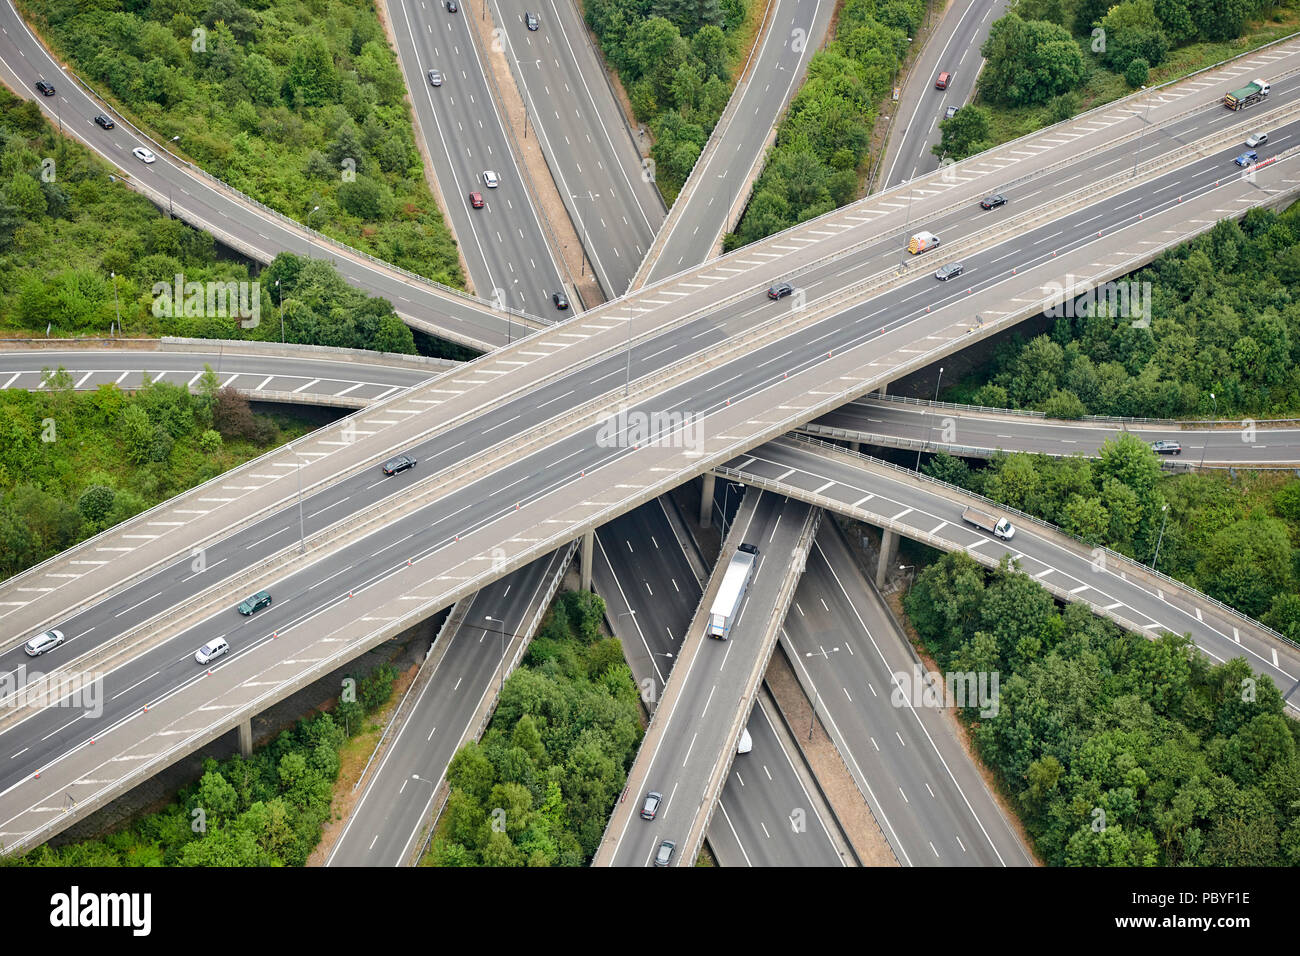 Eine Antenne Ansicht des M23/M25 Autobahn, South East England, Großbritannien Stockfoto